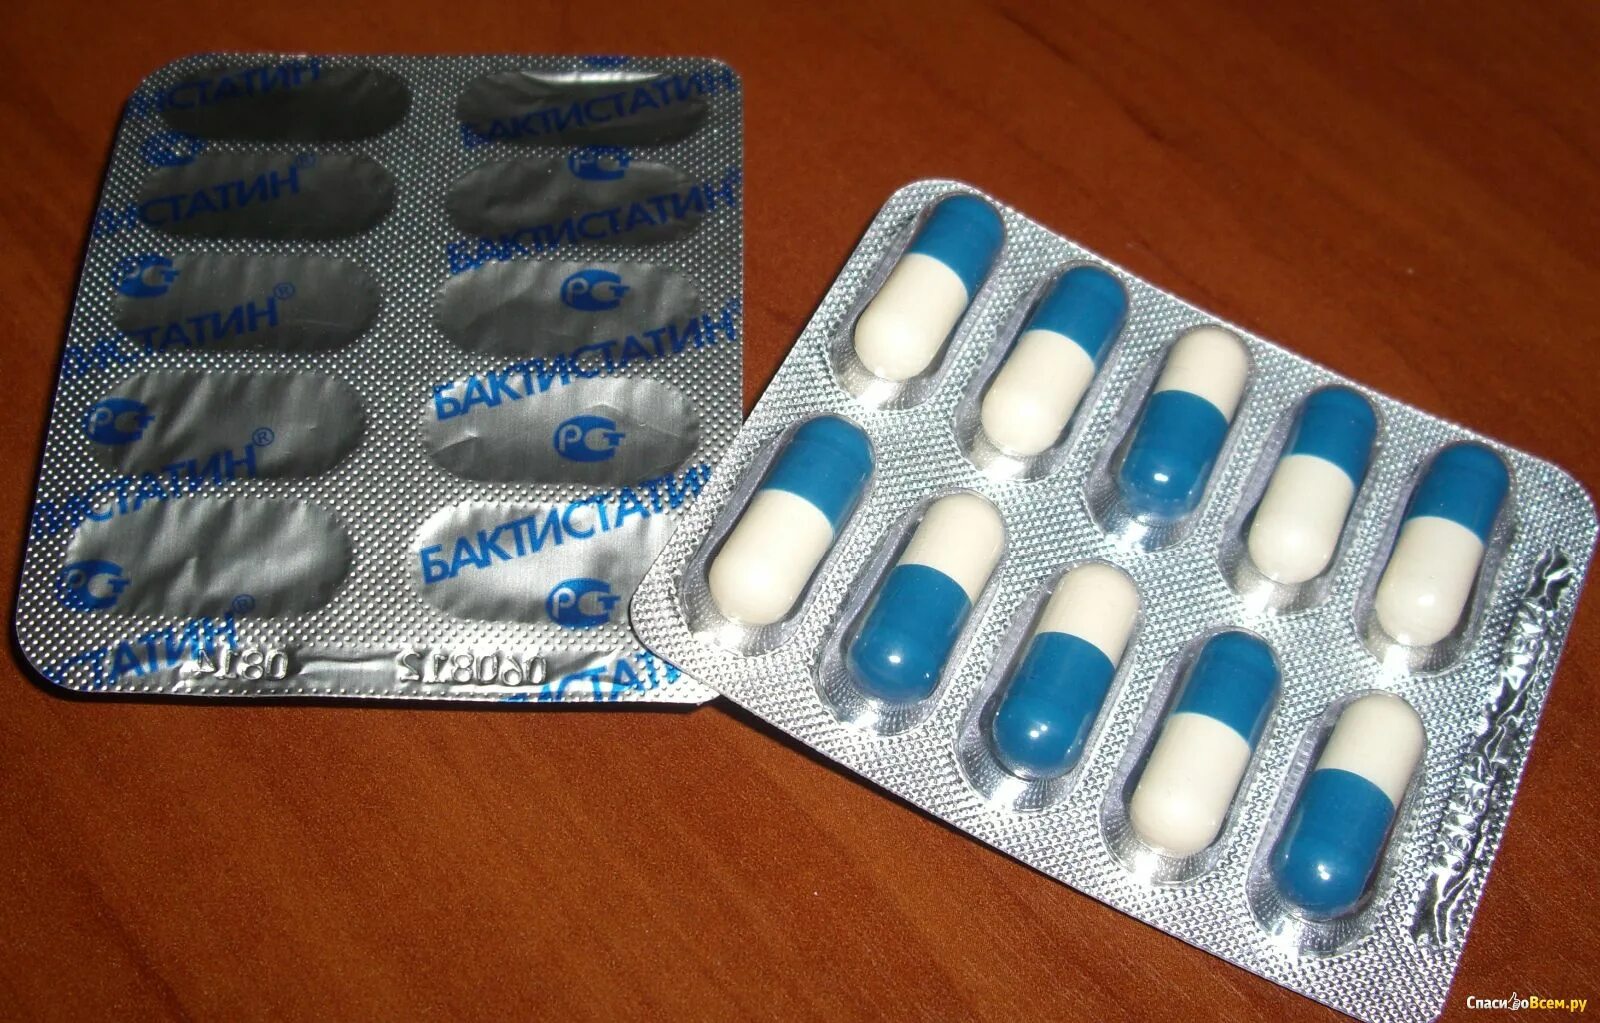 Три таблетки от простуды. Антибиотики синие капсулы. Синие капсулы от кашля. Сине белая капсула лекарства. Синие капсулы противомикробные.